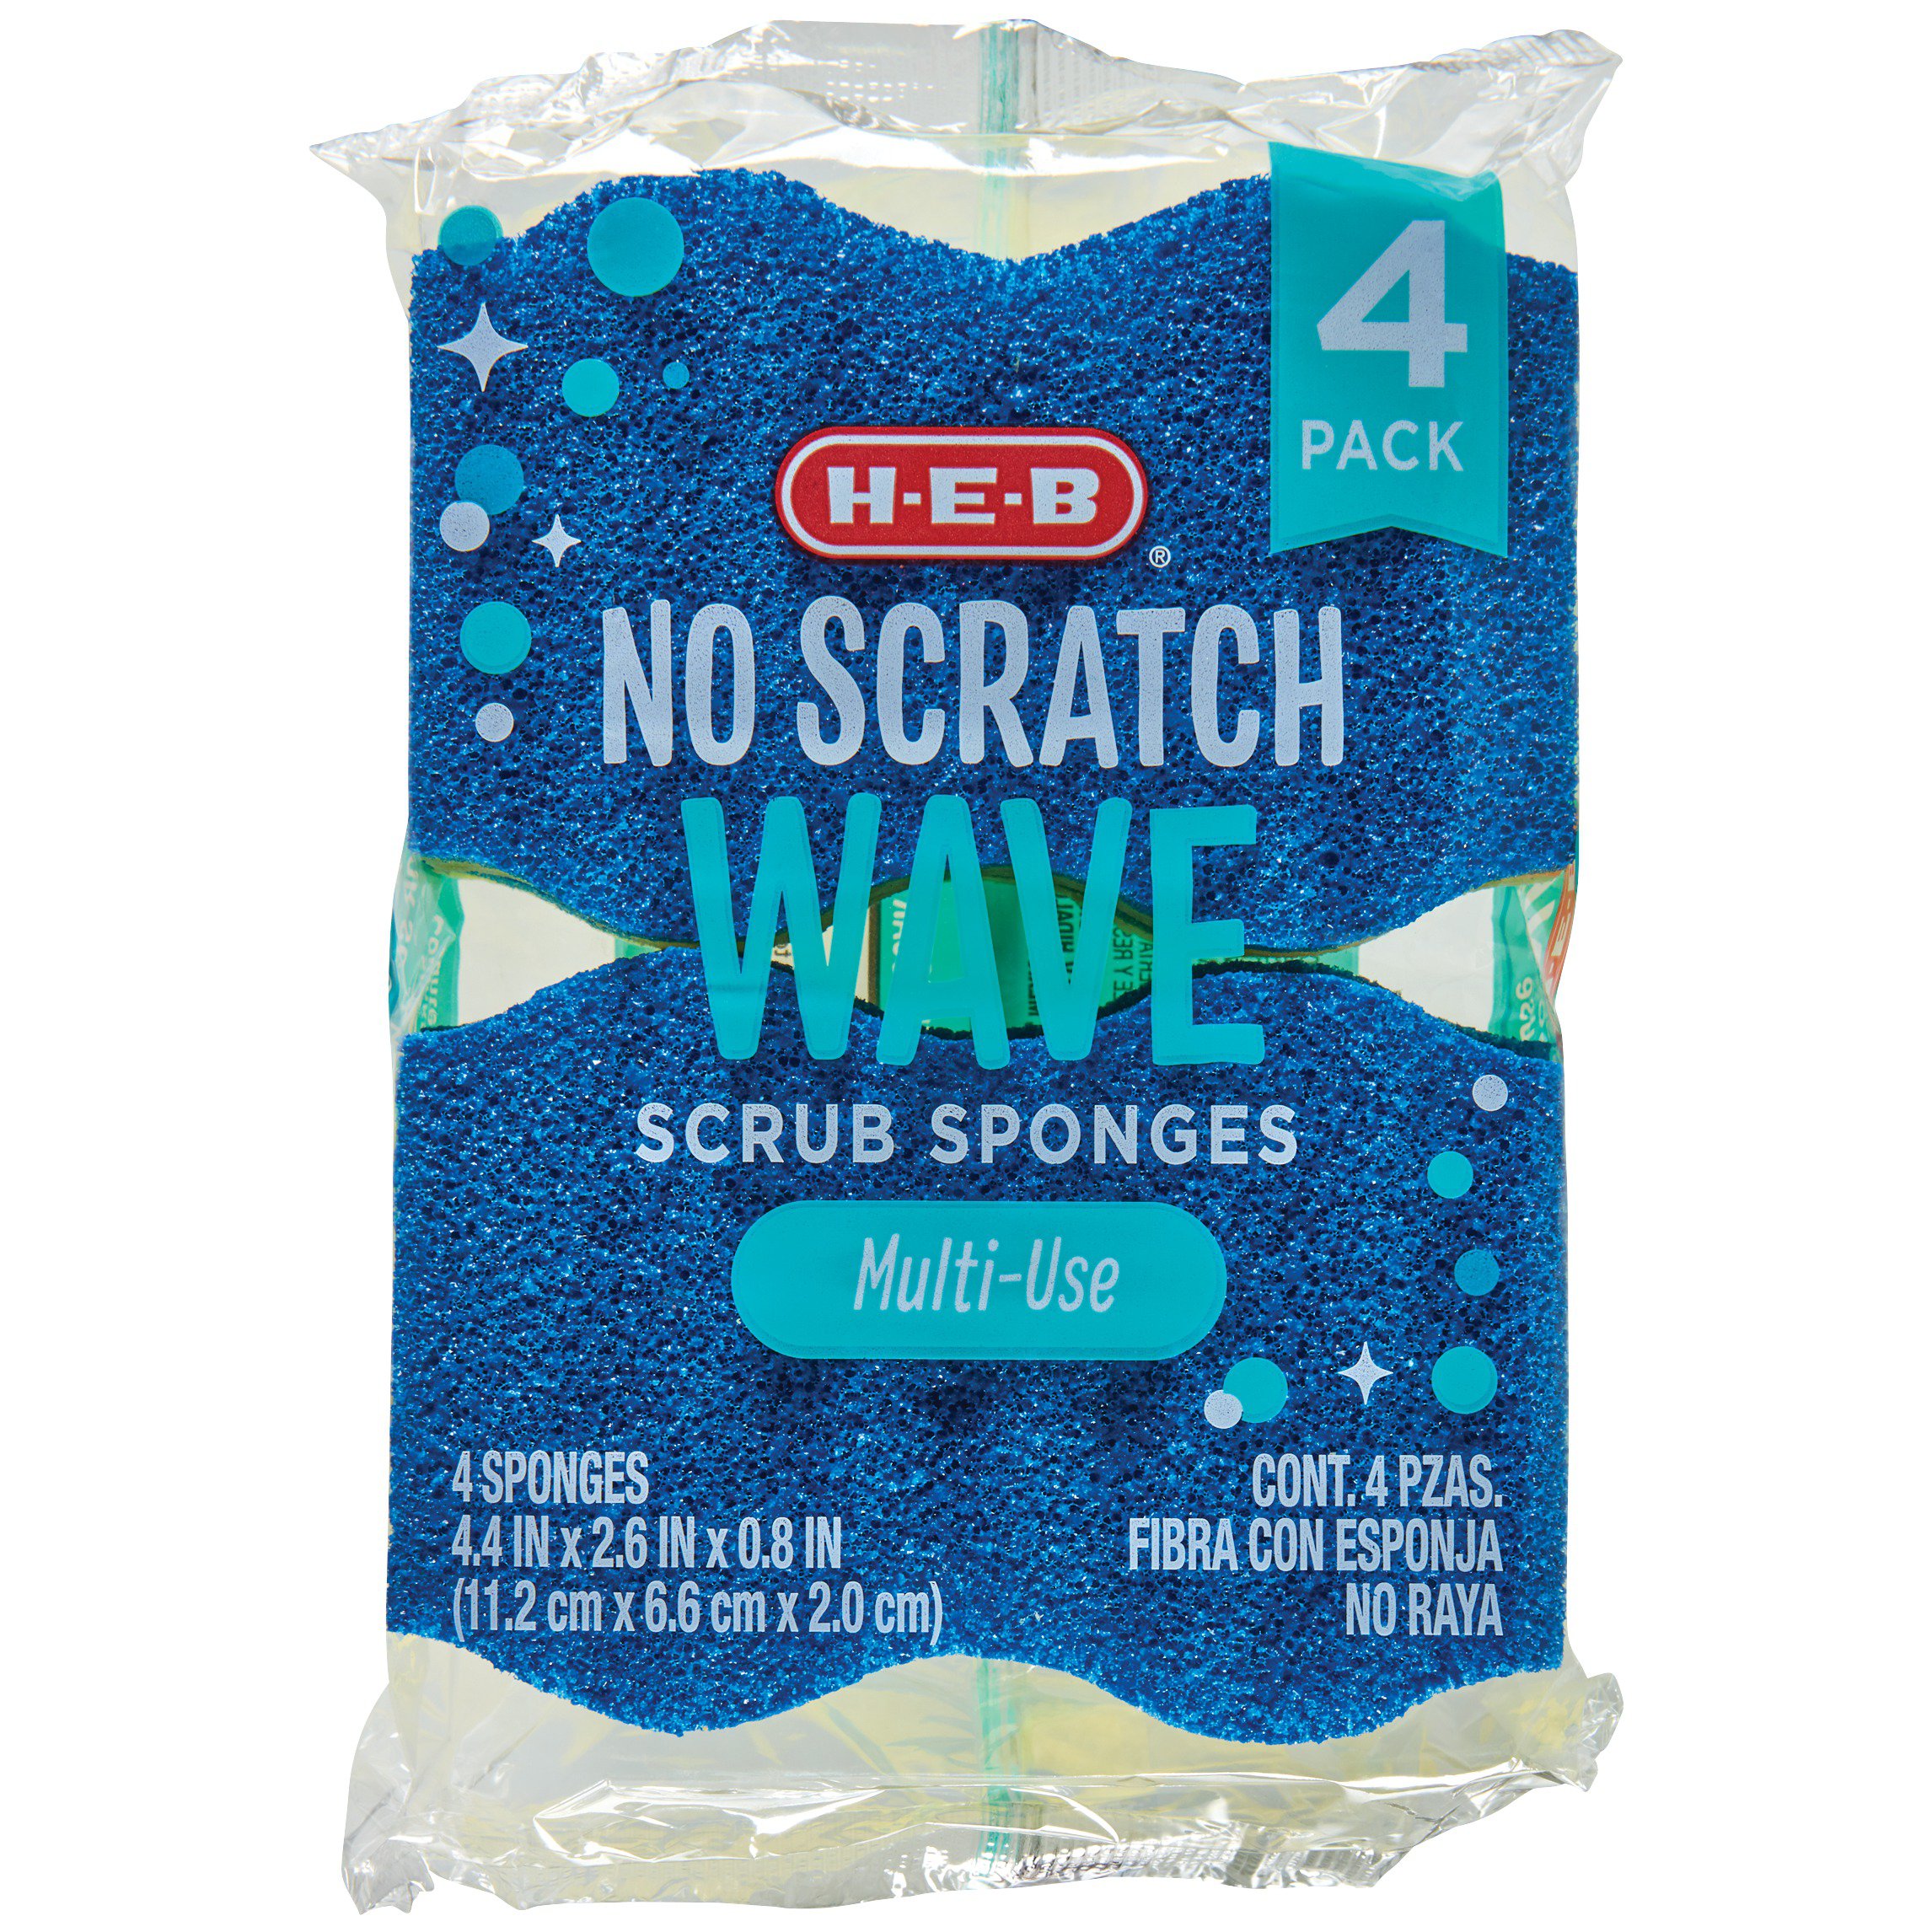 Dawn Ultra Scrubtastic Duck Sponge - Shop Sponges & Scrubbers at H-E-B